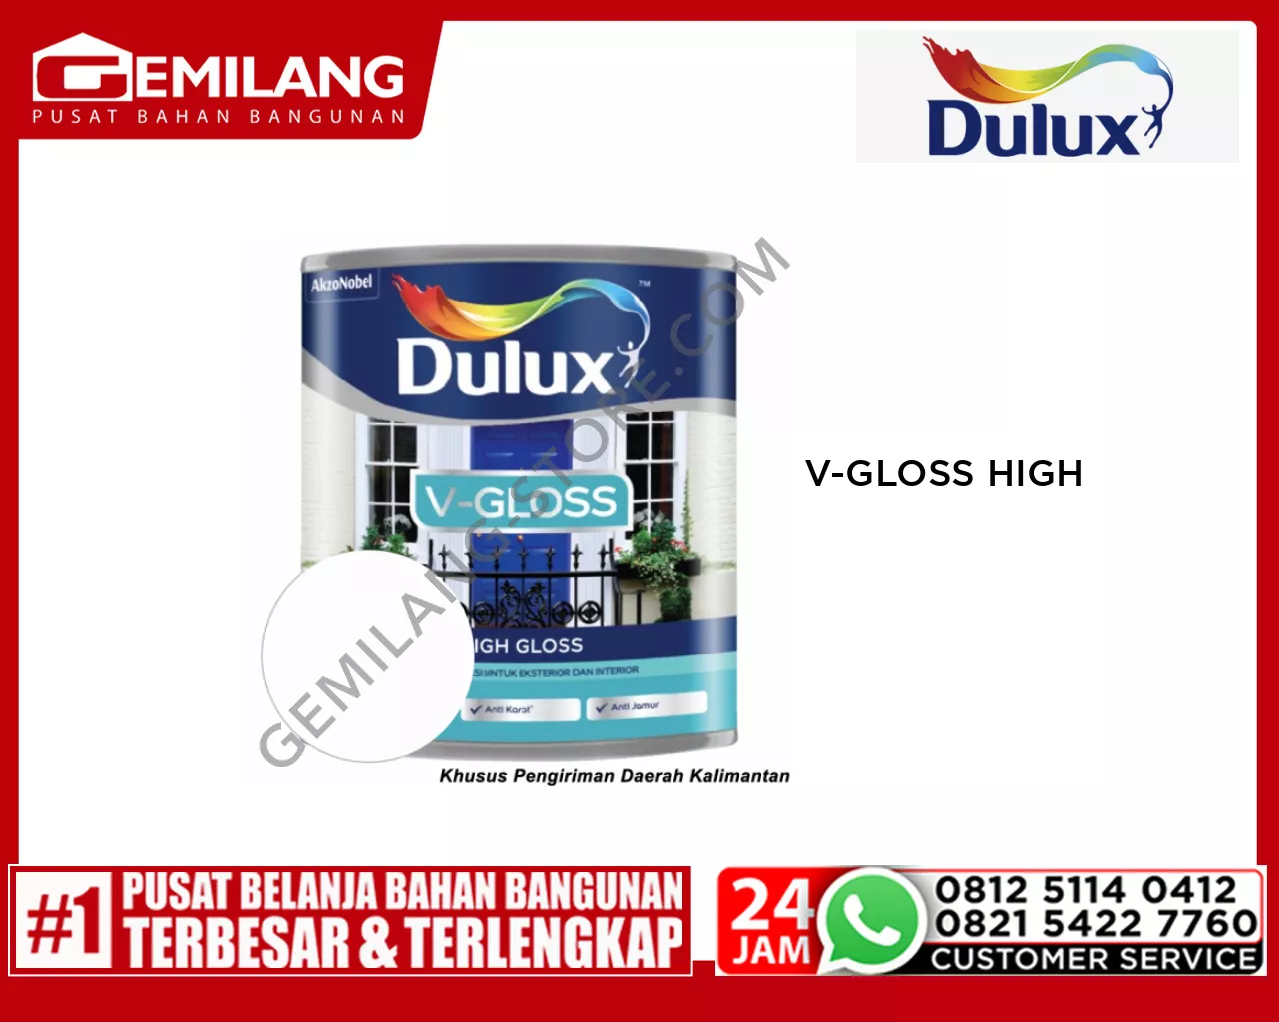 DULUX V-GLOSS HIGH GLOSS WHITE 9000 0.8ltr